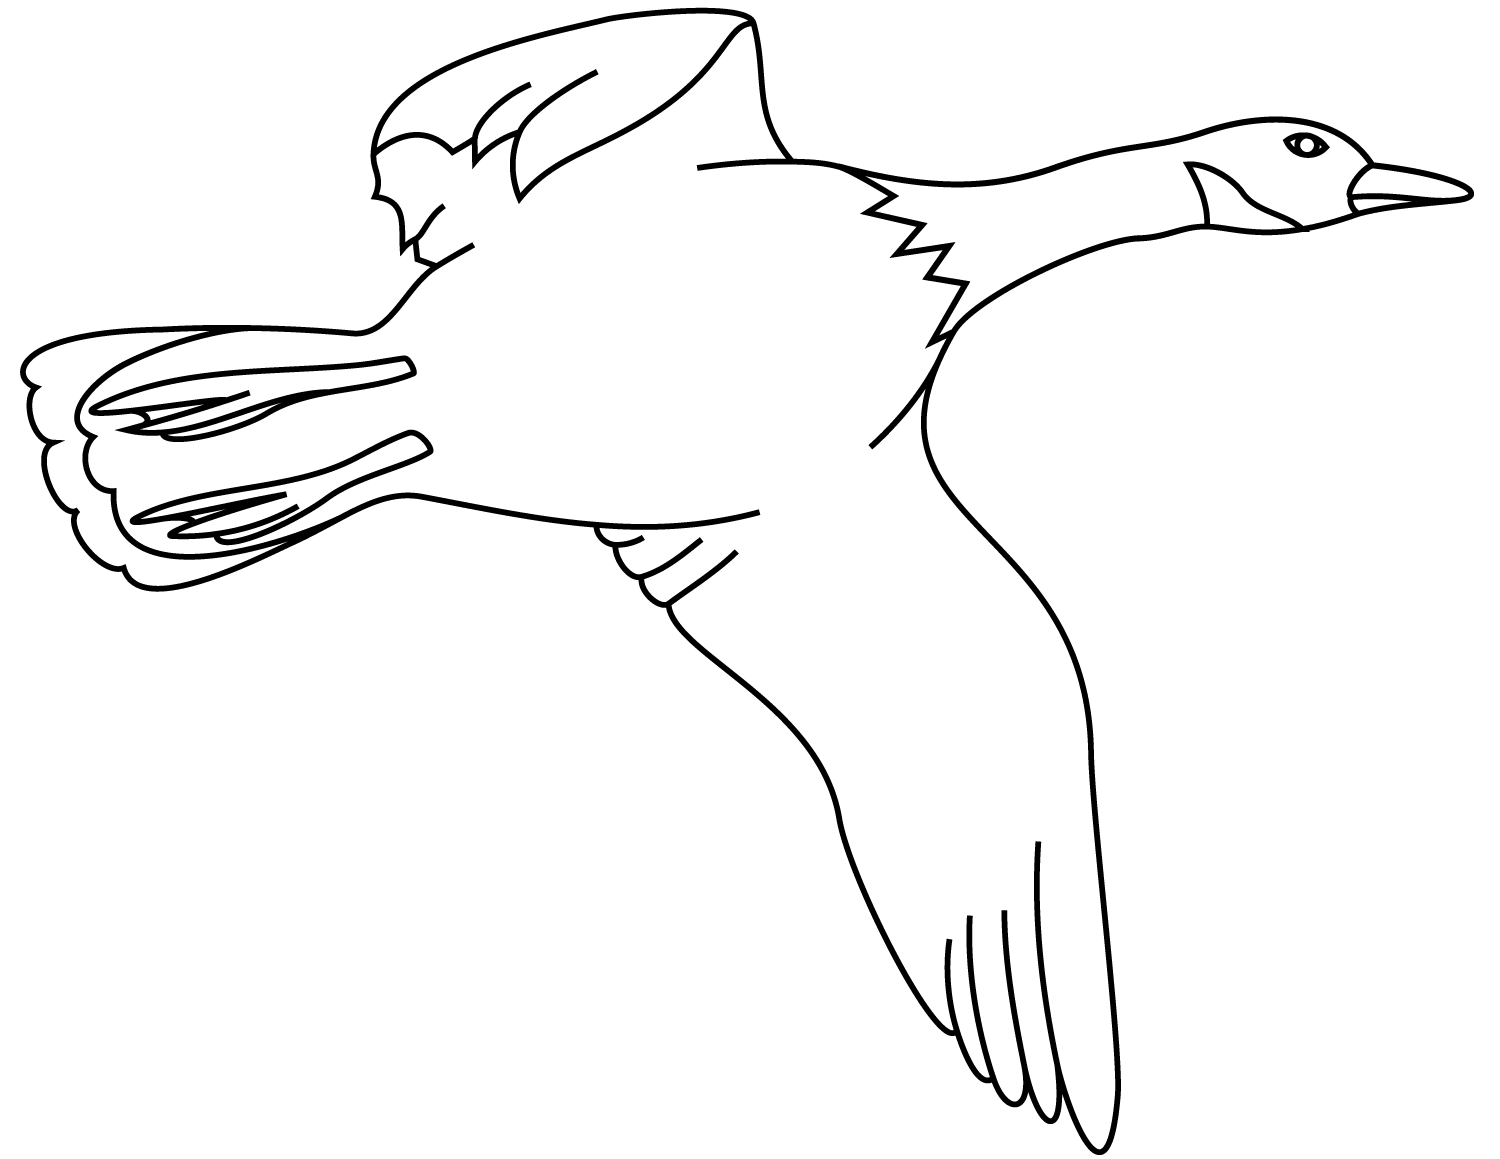 Le canard colvert volant a besoin de grandes ailes pour décoller rapidement des canards